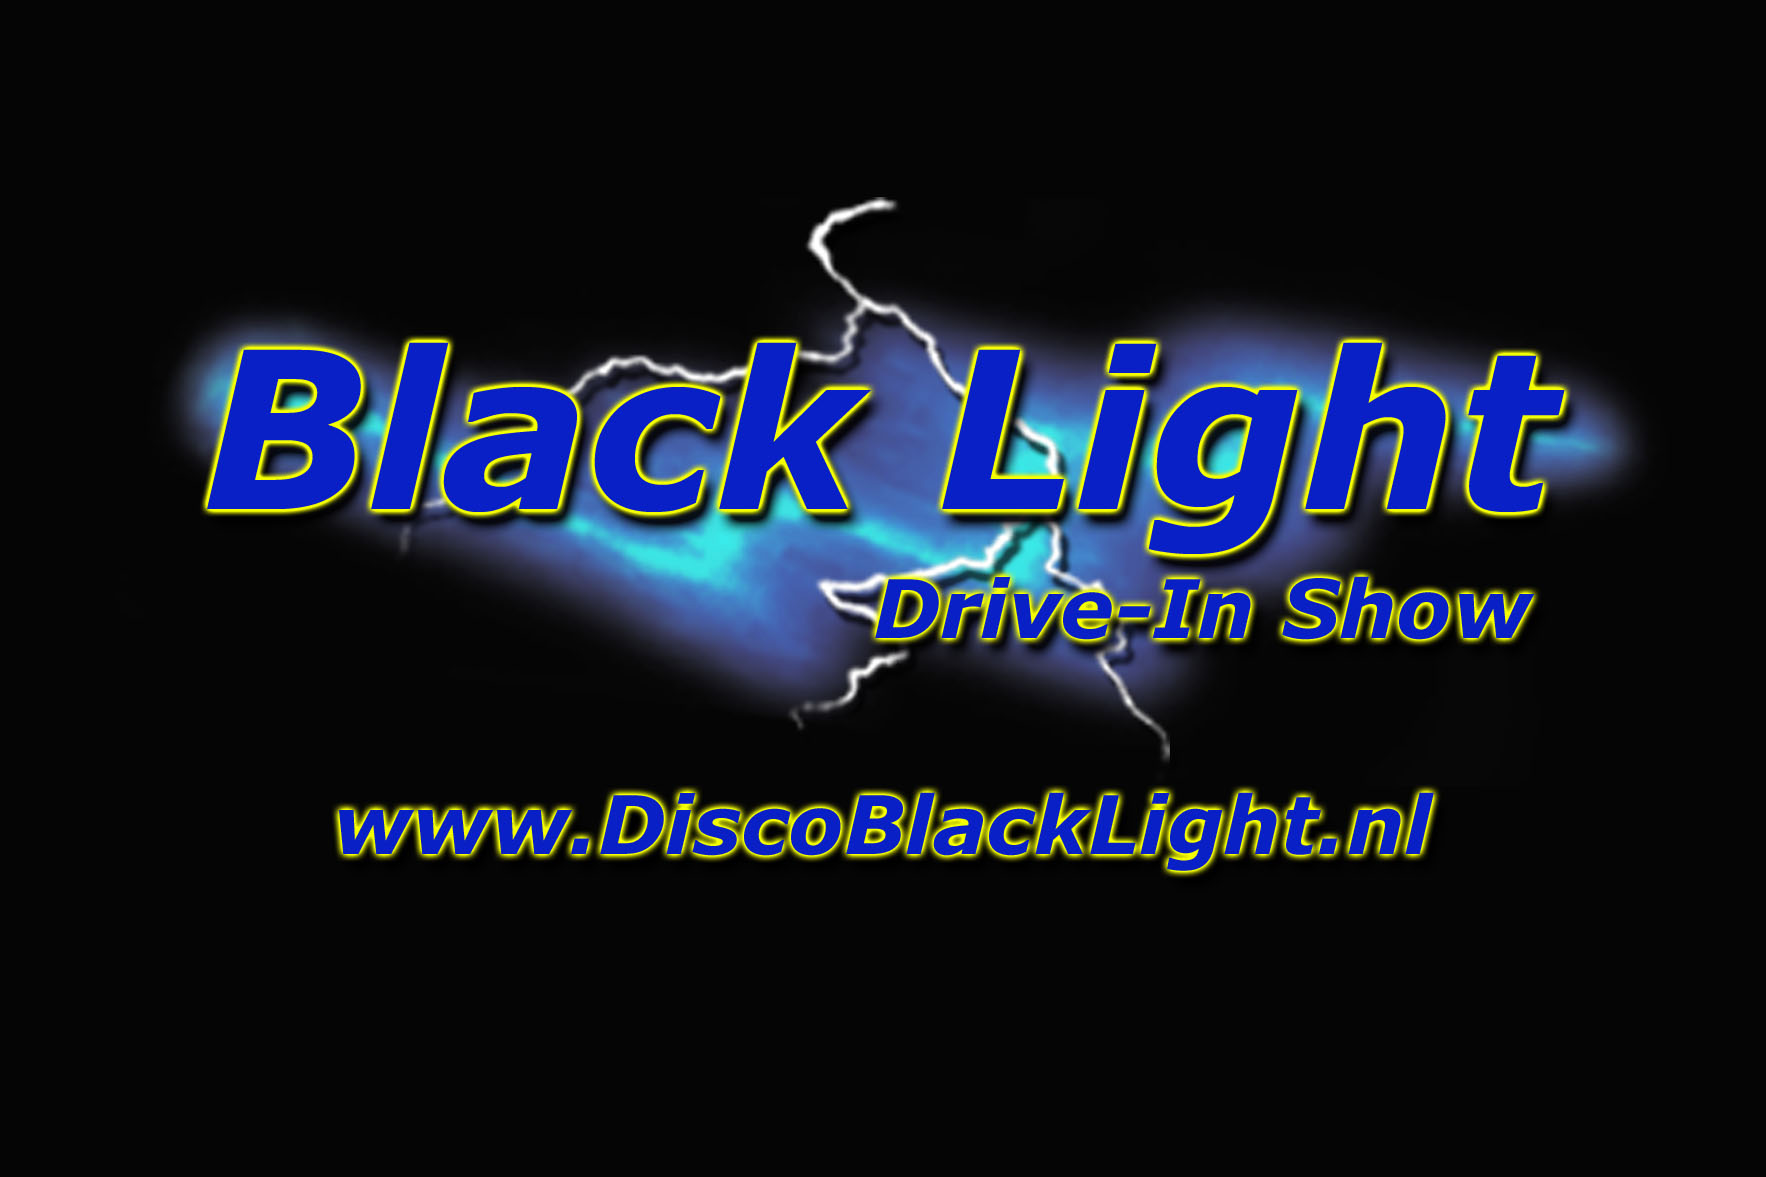 Black Light Reclamebord In Groot Formaat 291kb Zwarte